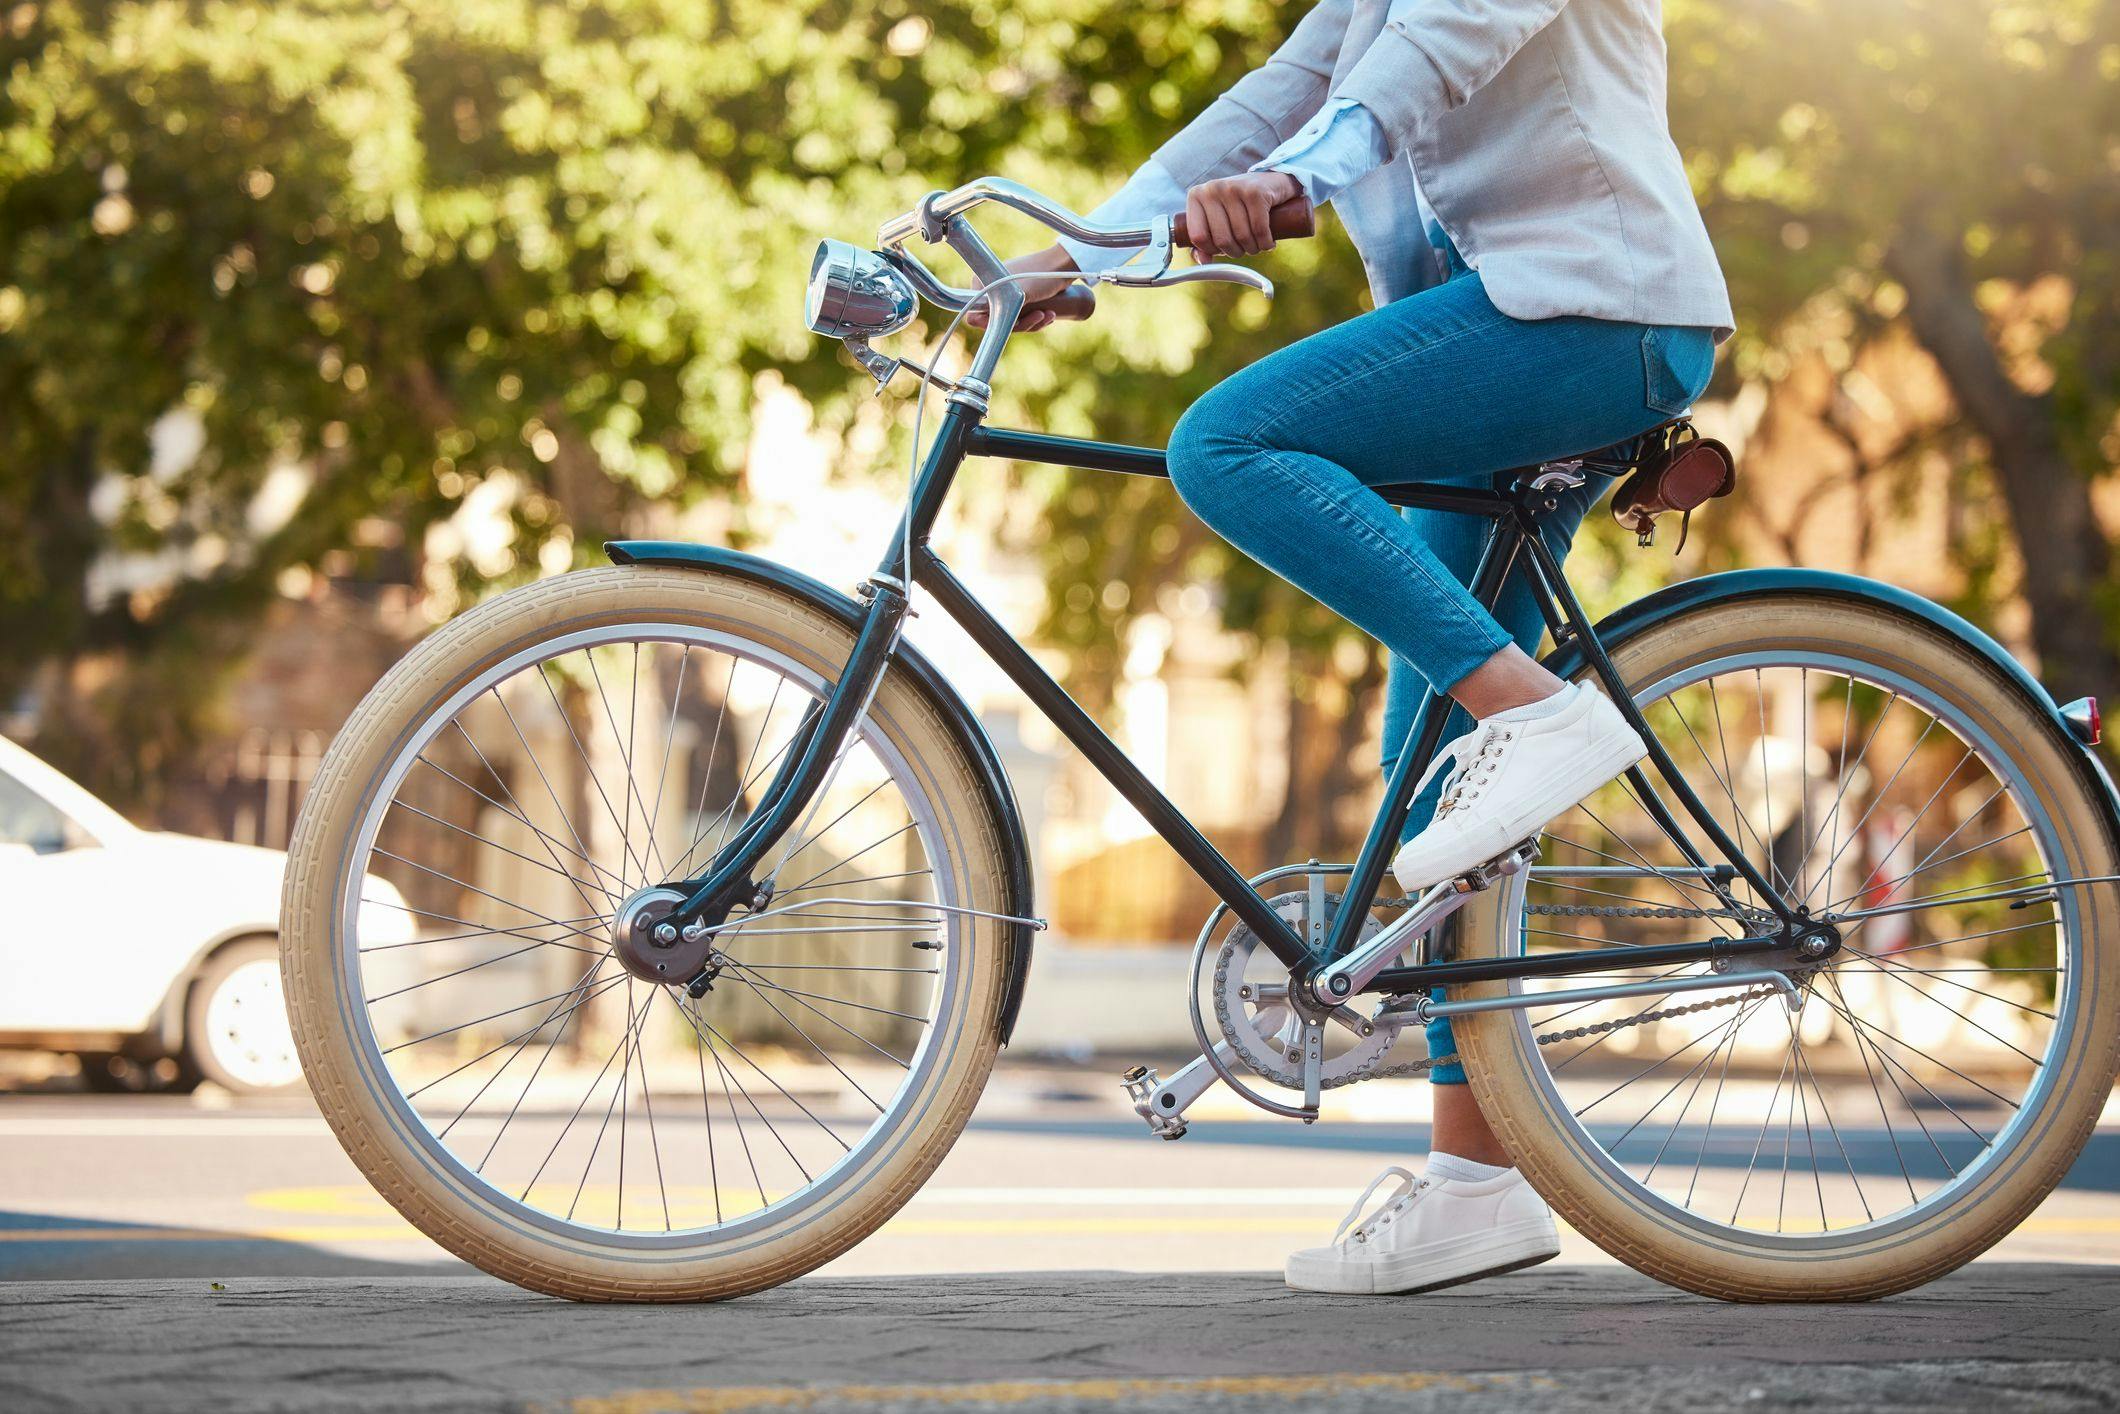 Trocar o carro por bicicleta: veja 8 dicas de como começar 